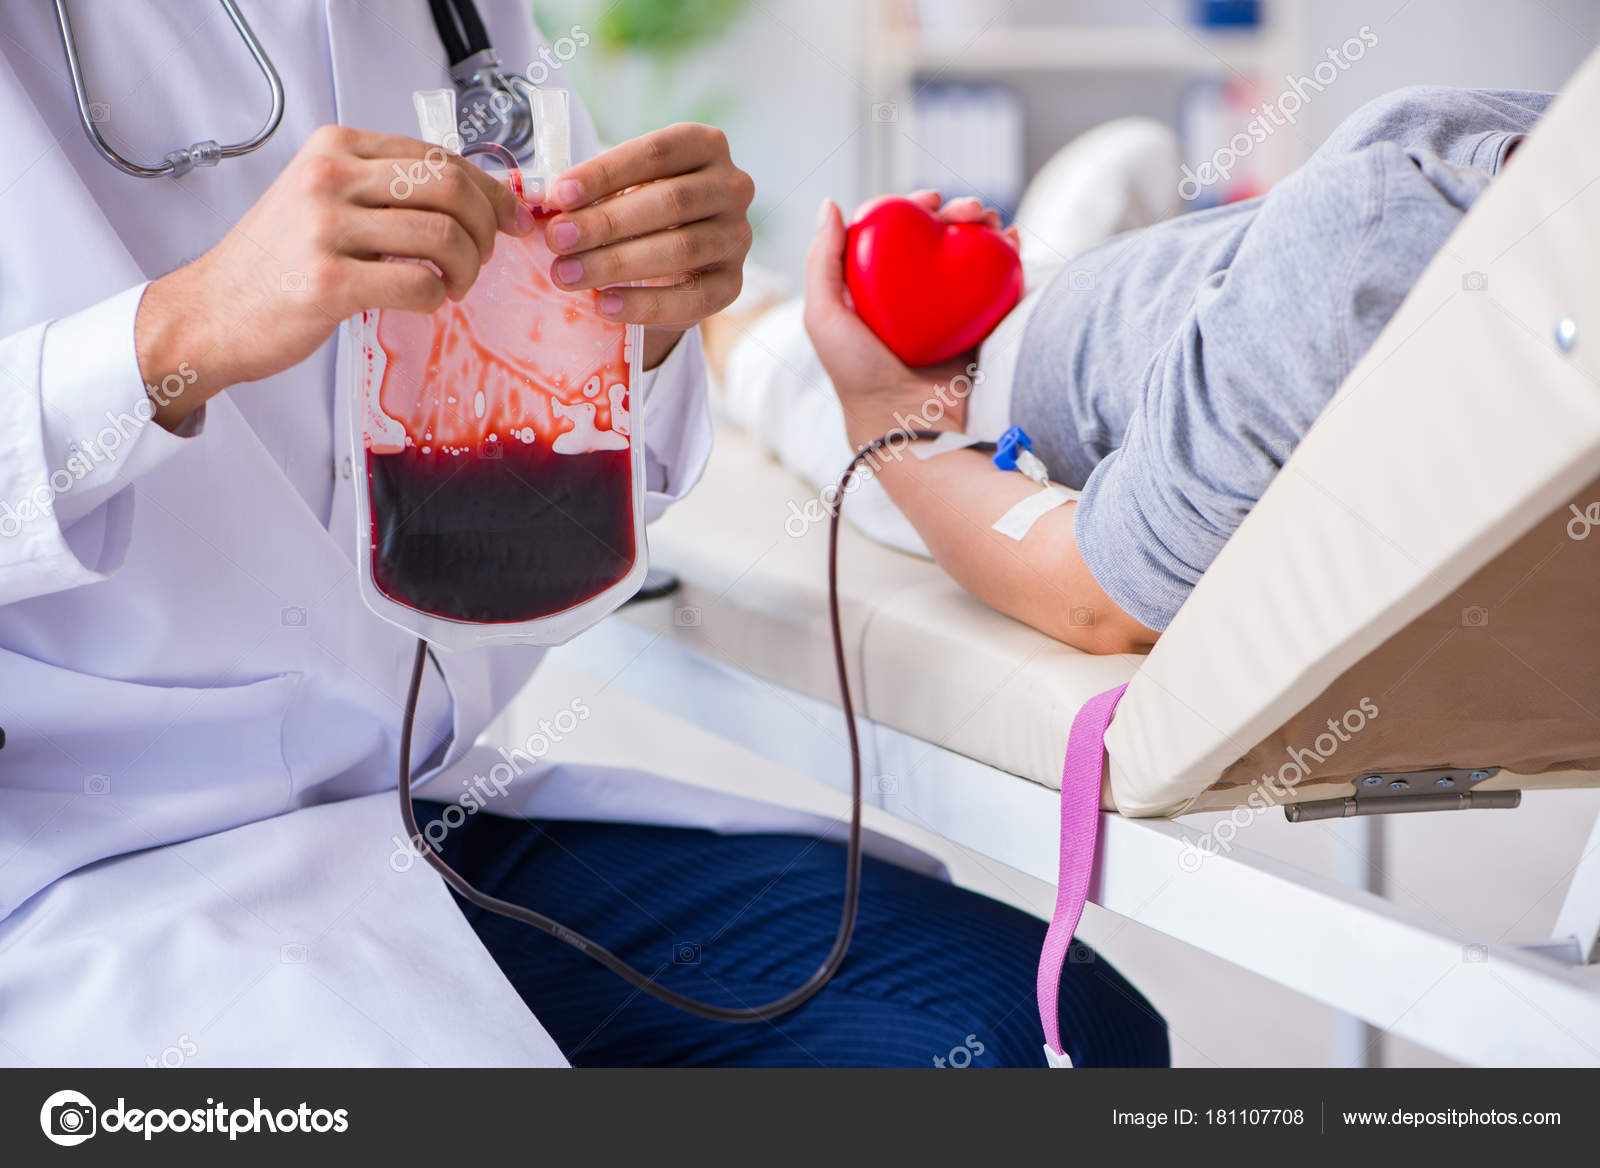 Синдром донора. Переливание крови пациенту. Переливание донорской крови. Процесс переливания крови.